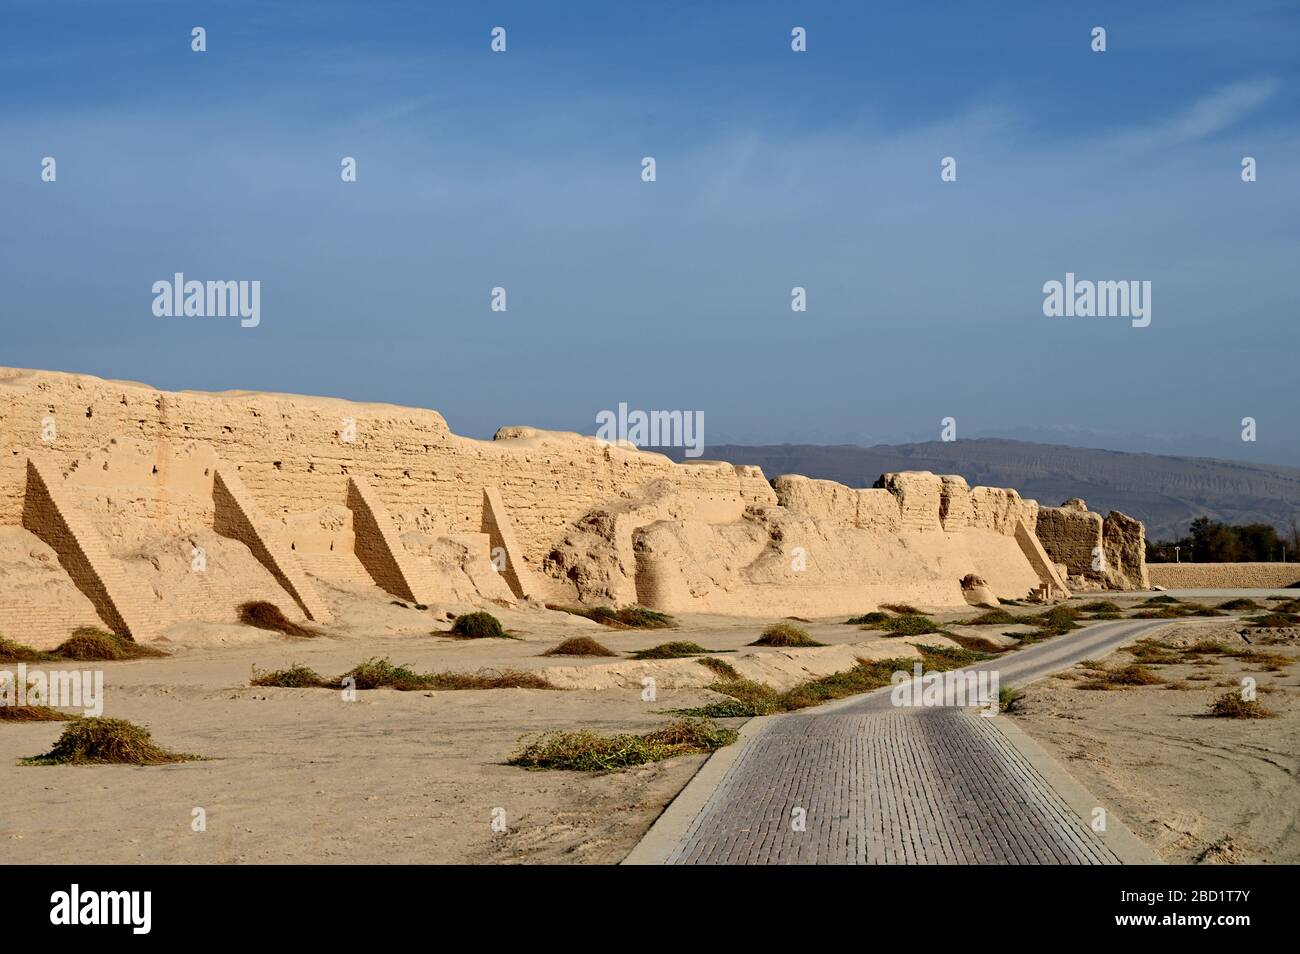 Strada passato rovinato mura della città di strada della seta antica città di Gaochang, deserto di Taklamakan, Xinjiang, Cina, Asia Foto Stock